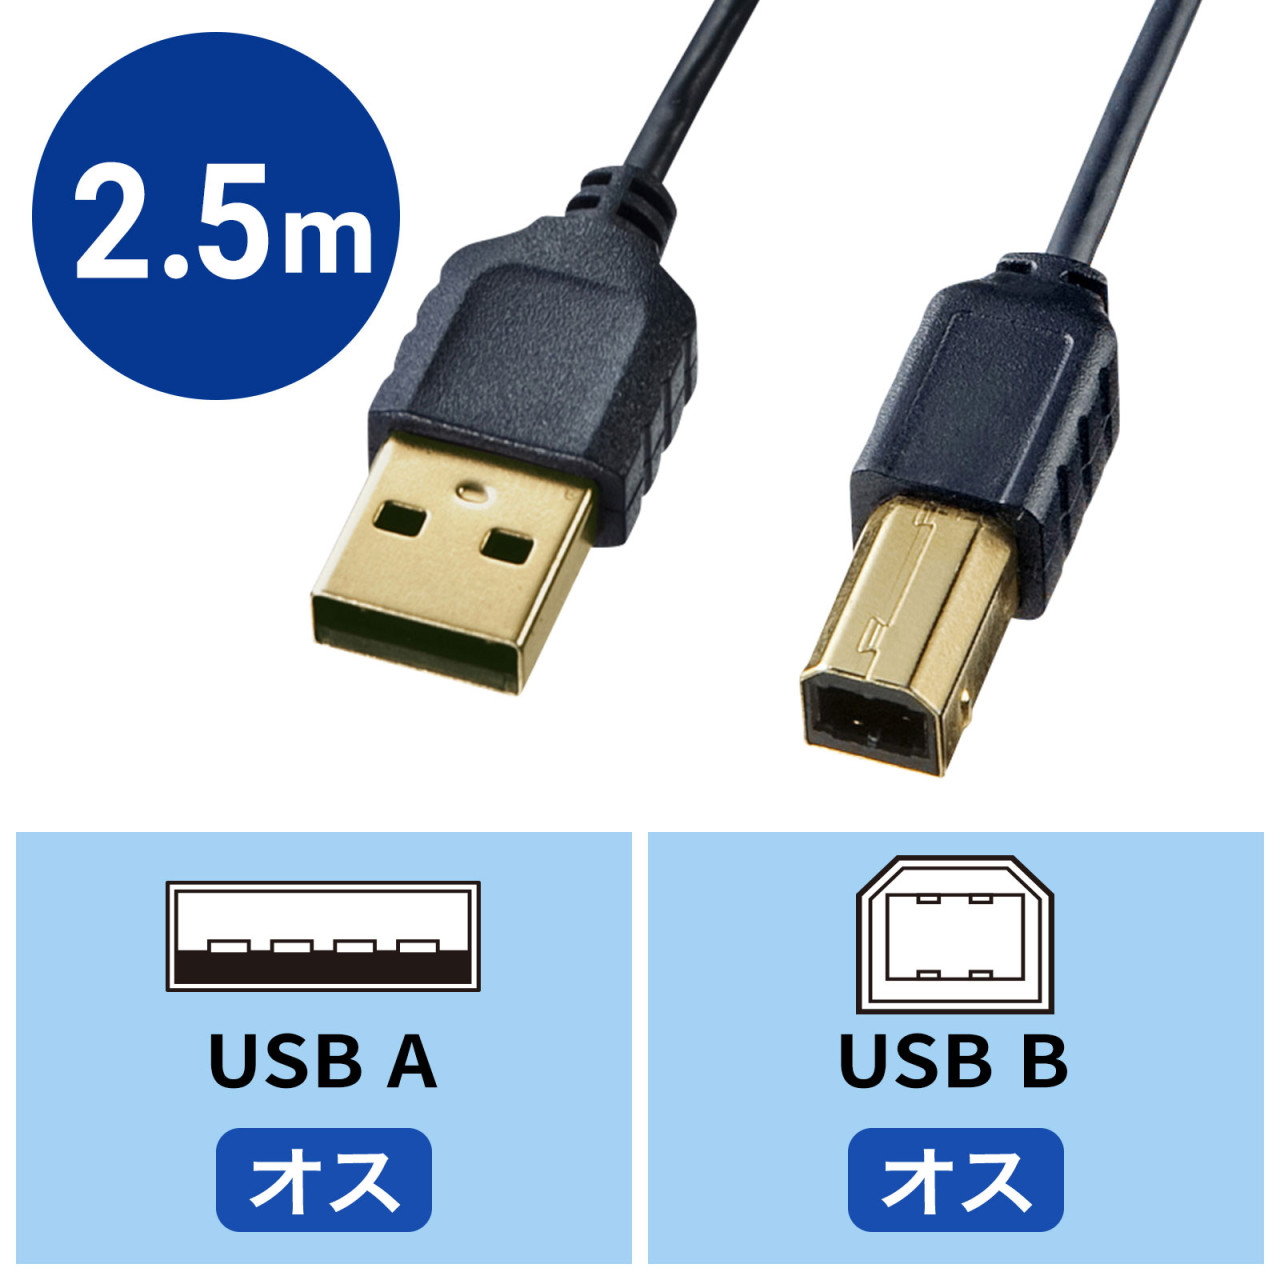 極細USBケーブル 2.5m USB2.0 USB A-Bコネクタ ブラック KU20-SL25BKK